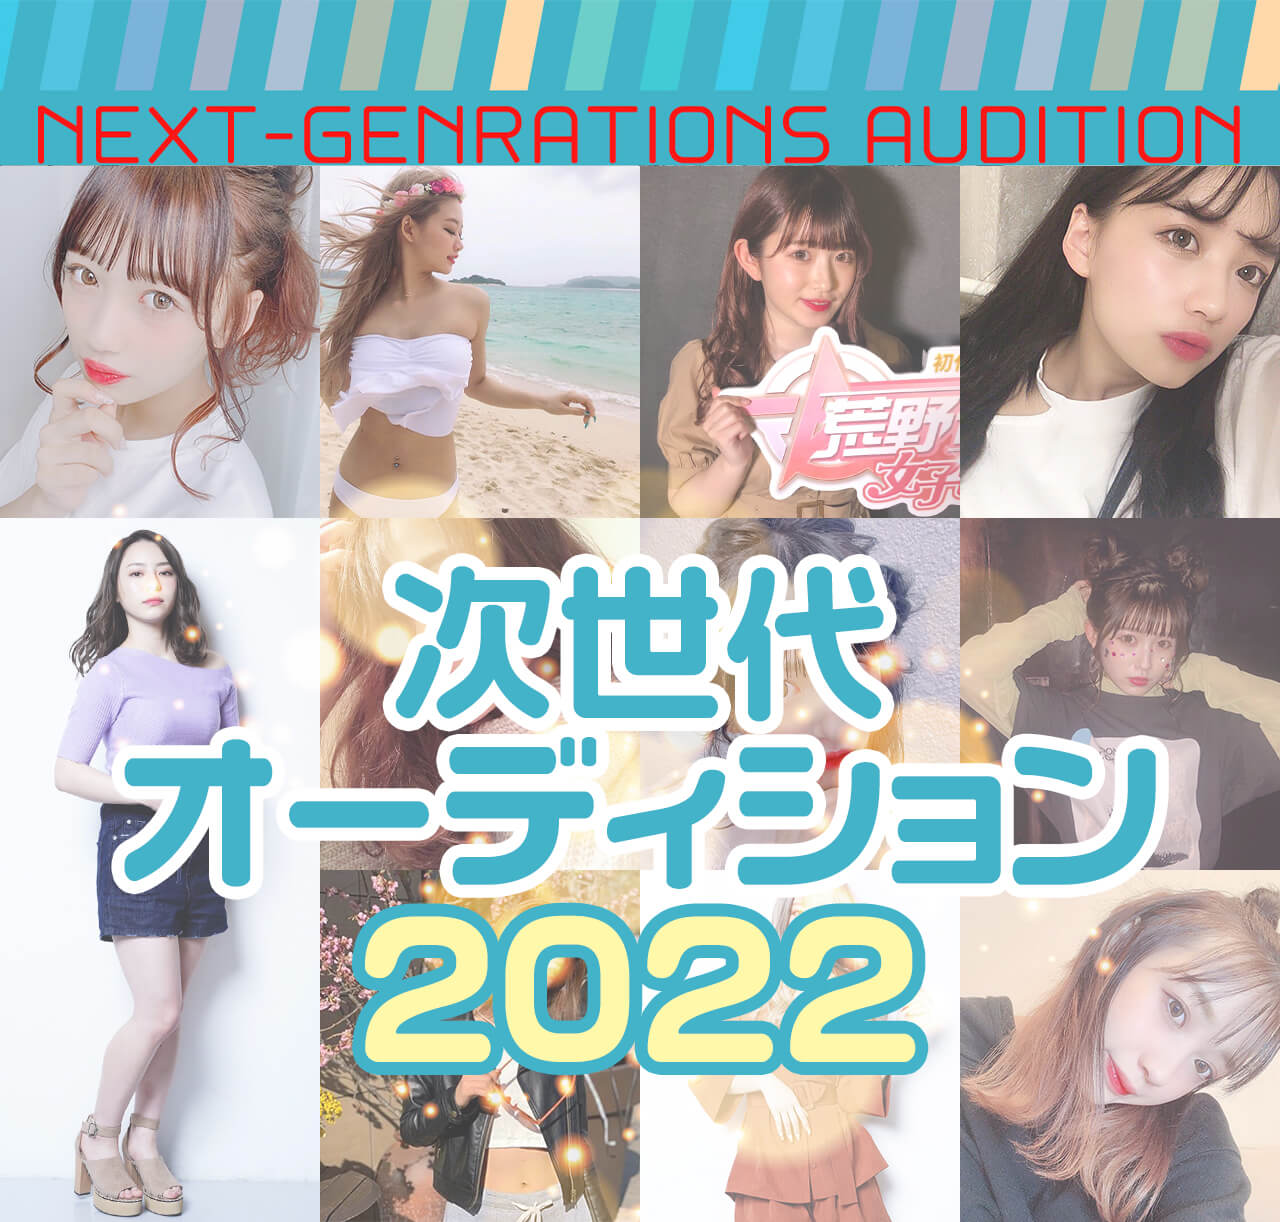 NEXT-GENRATIONS AUDITION
	次世代オーディション2022